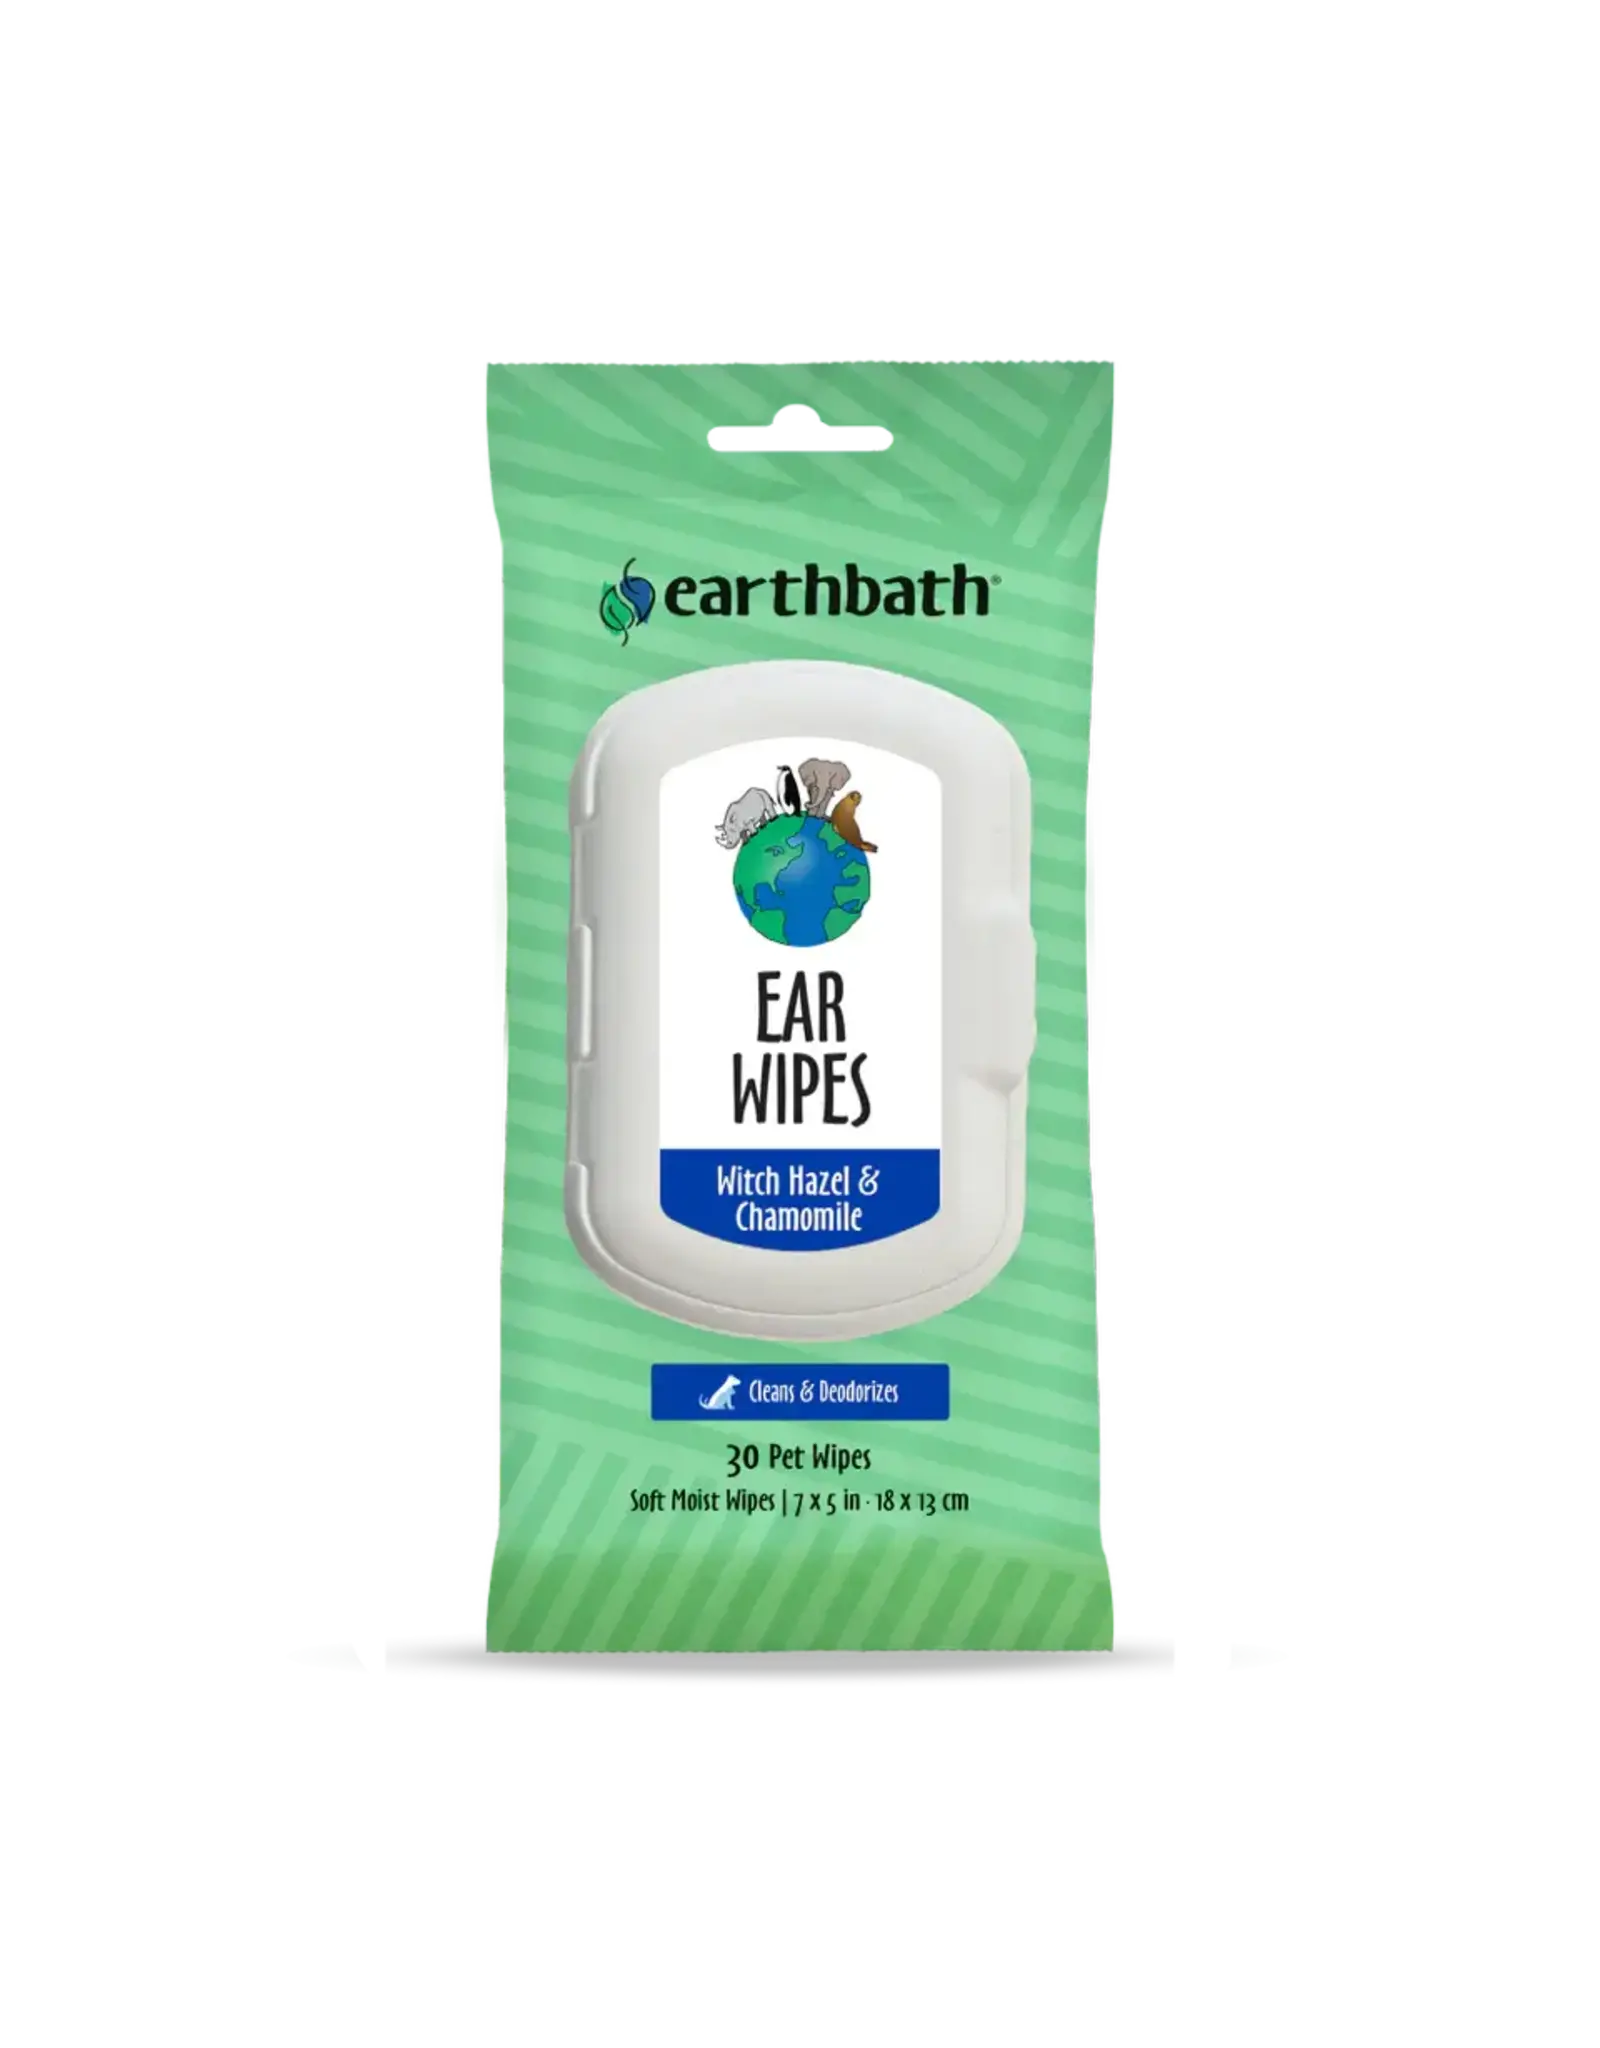 EARTHBATH EARTHBATH EAR WIPES